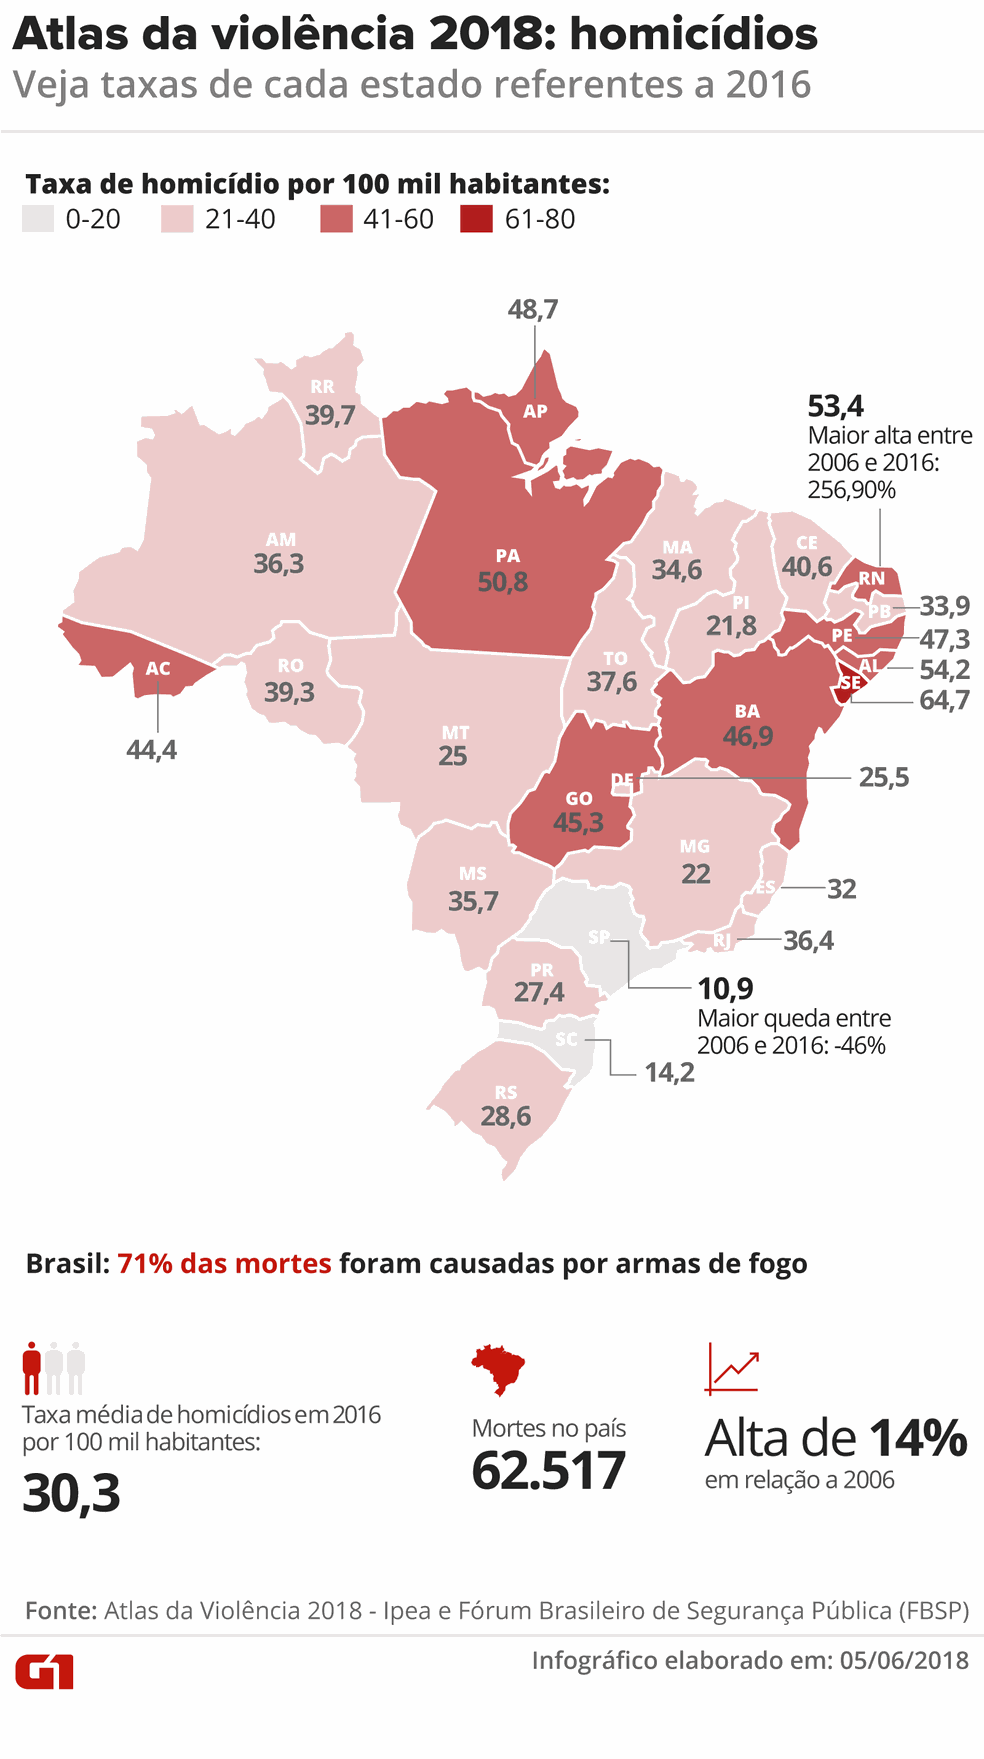 Atlas Da Violência Mostra Crescimento De 152 No Número De Homicídios No To Palmas Aqui